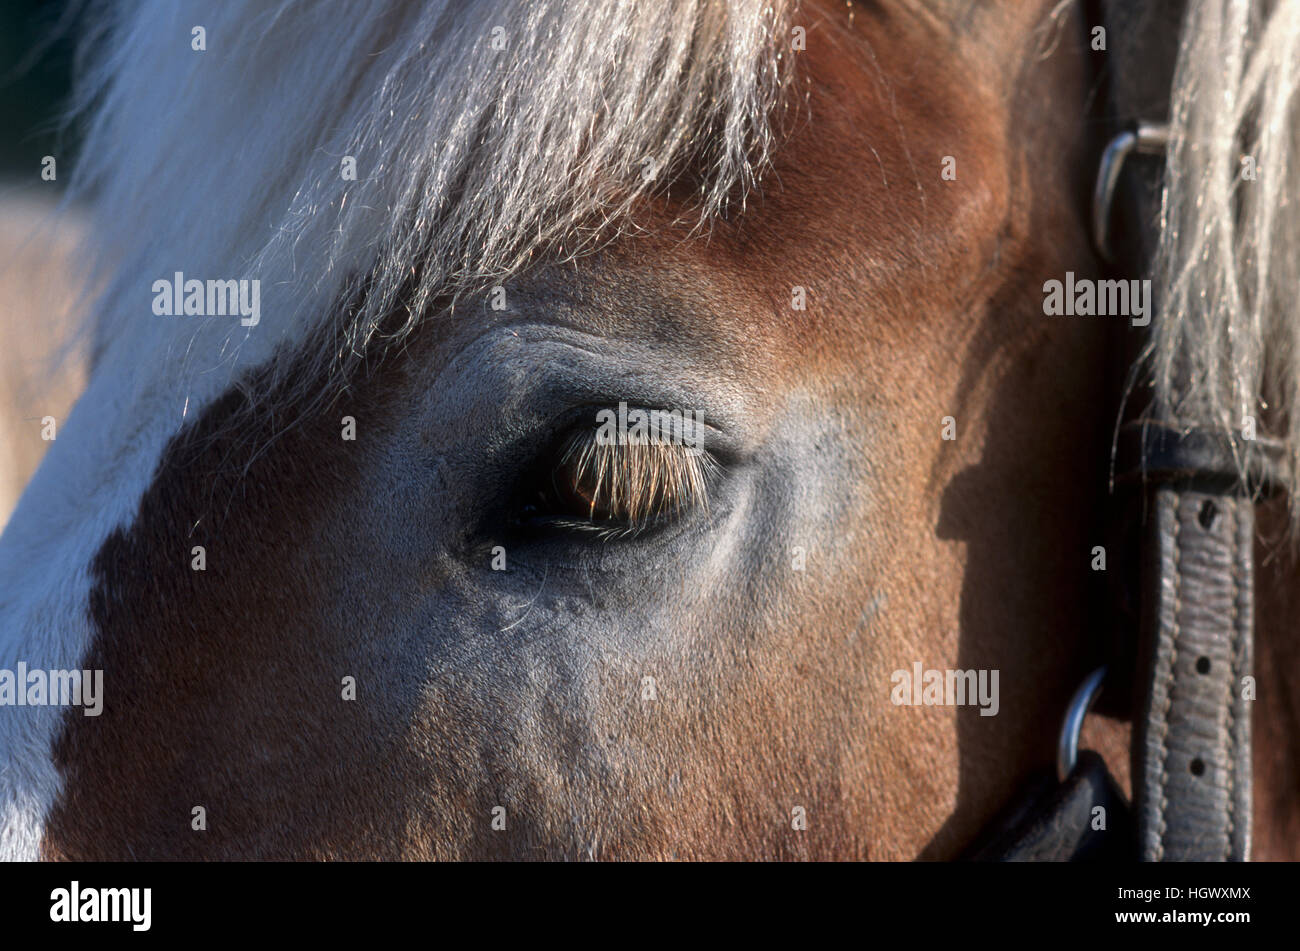 Los ojos del caballo y pestañas Foto de stock